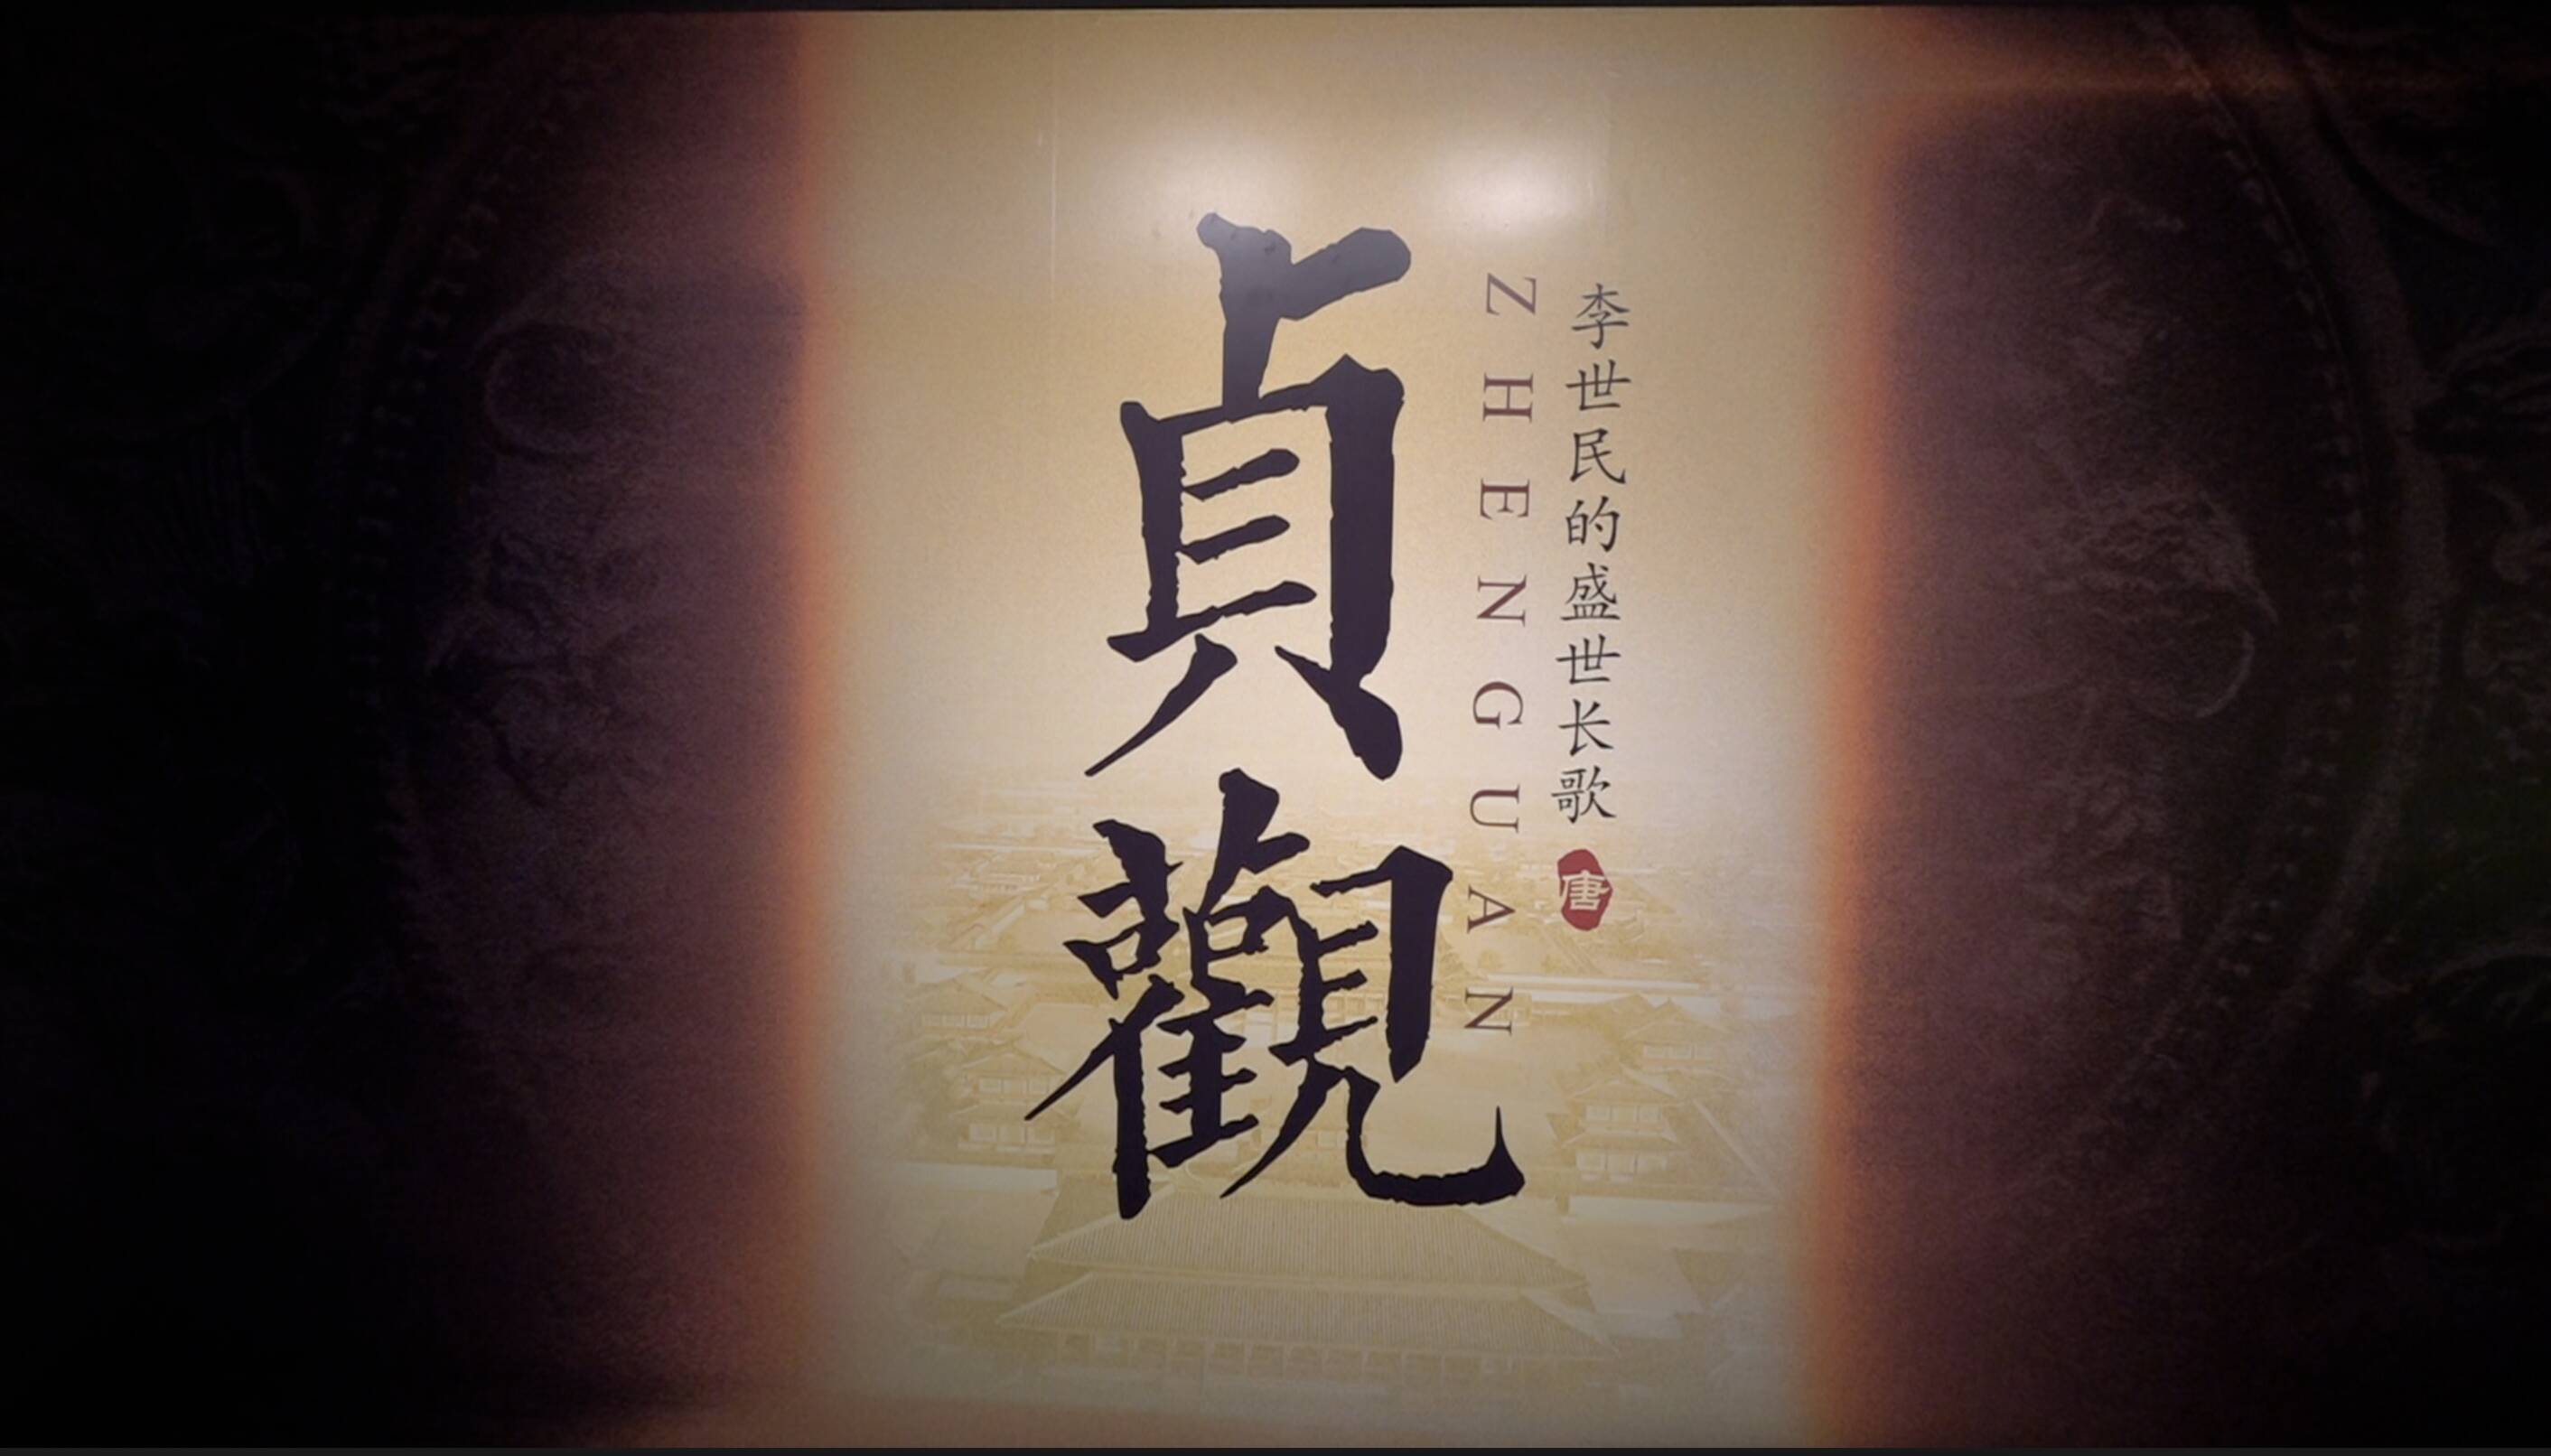 大型文物展“贞观——李世民的盛世长歌”在京开幕